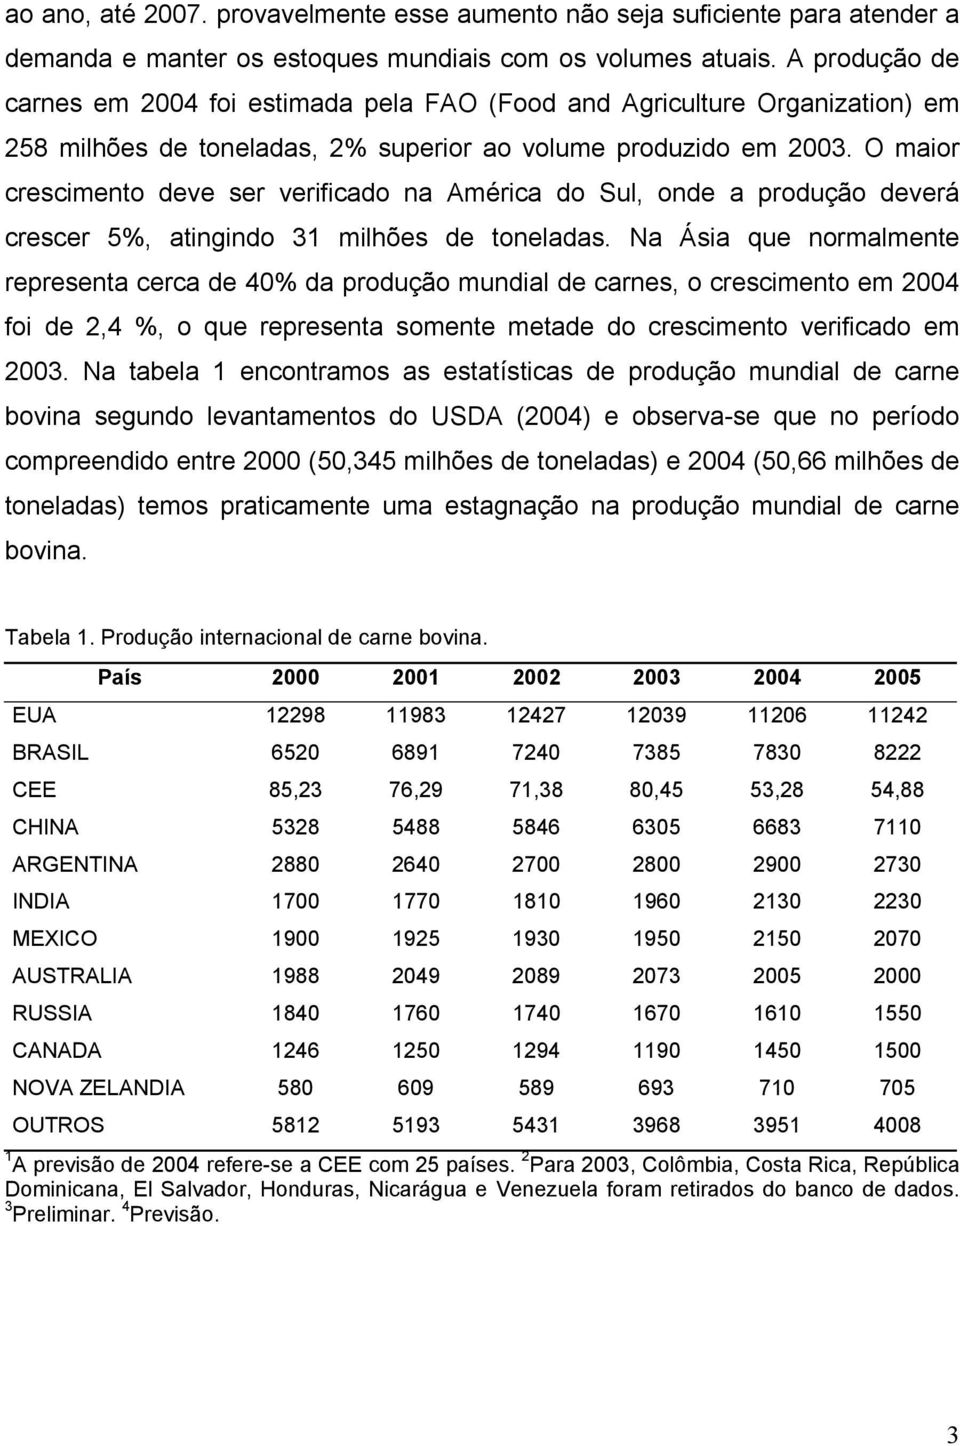 O maior crescimento deve ser verificado na América do Sul, onde a produção deverá crescer 5%, atingindo 31 milhões de toneladas.